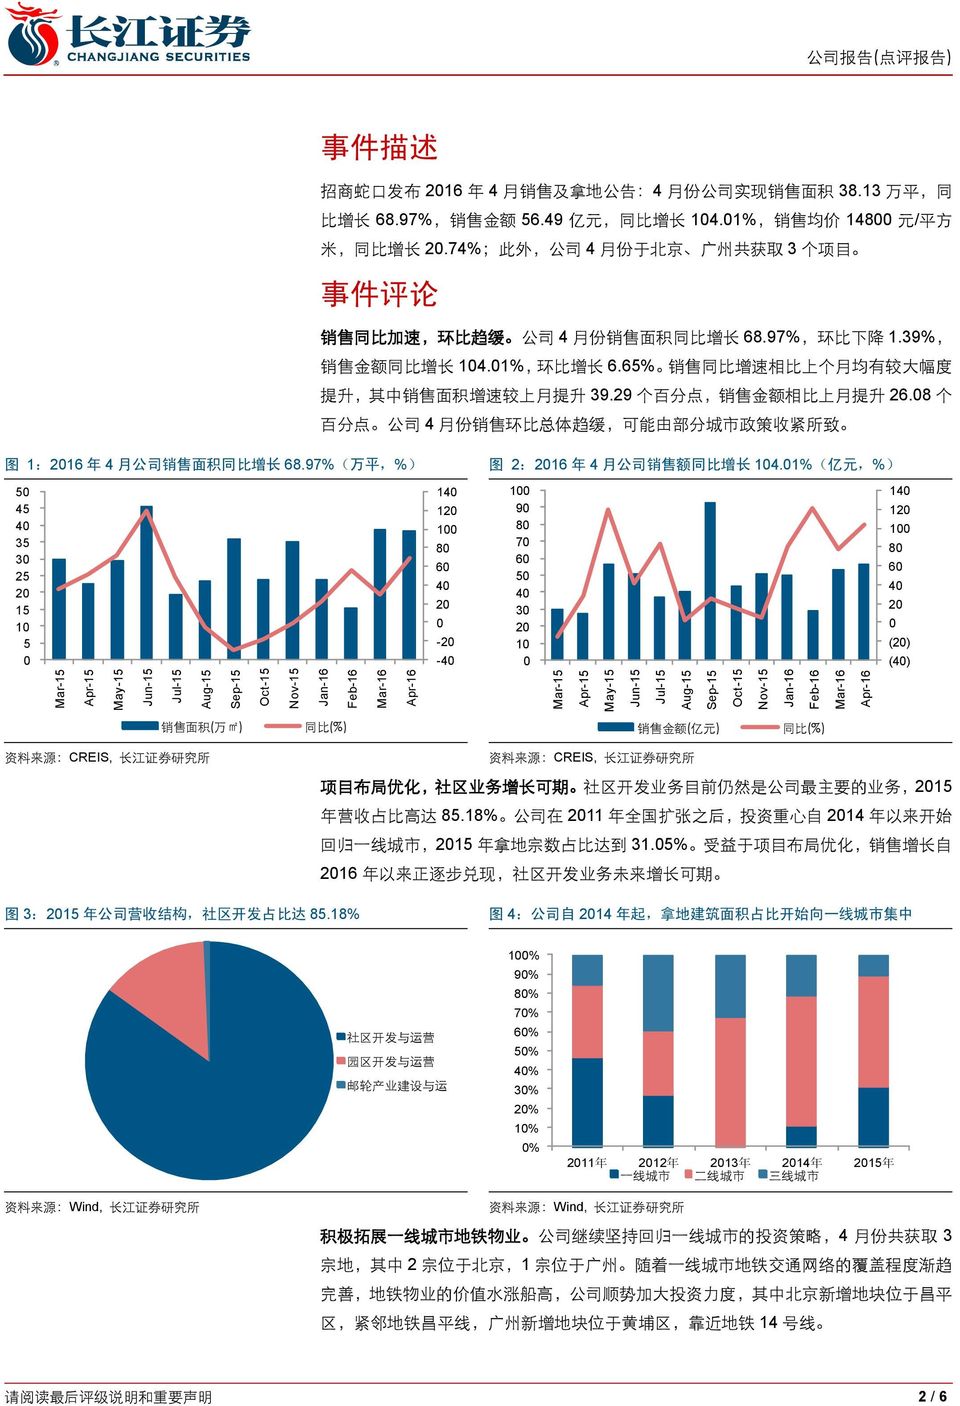 74%; 此 外, 公 司 4 月 份 于 北 京 广 州 共 获 取 3 个 项 目 事 件 评 论 销 售 同 比 加 速, 环 比 趋 缓 公 司 4 月 份 销 售 面 积 同 比 增 长 68.97%, 环 比 下 降 1.39%, 销 售 金 额 同 比 增 长 14.1%, 环 比 增 长 6.